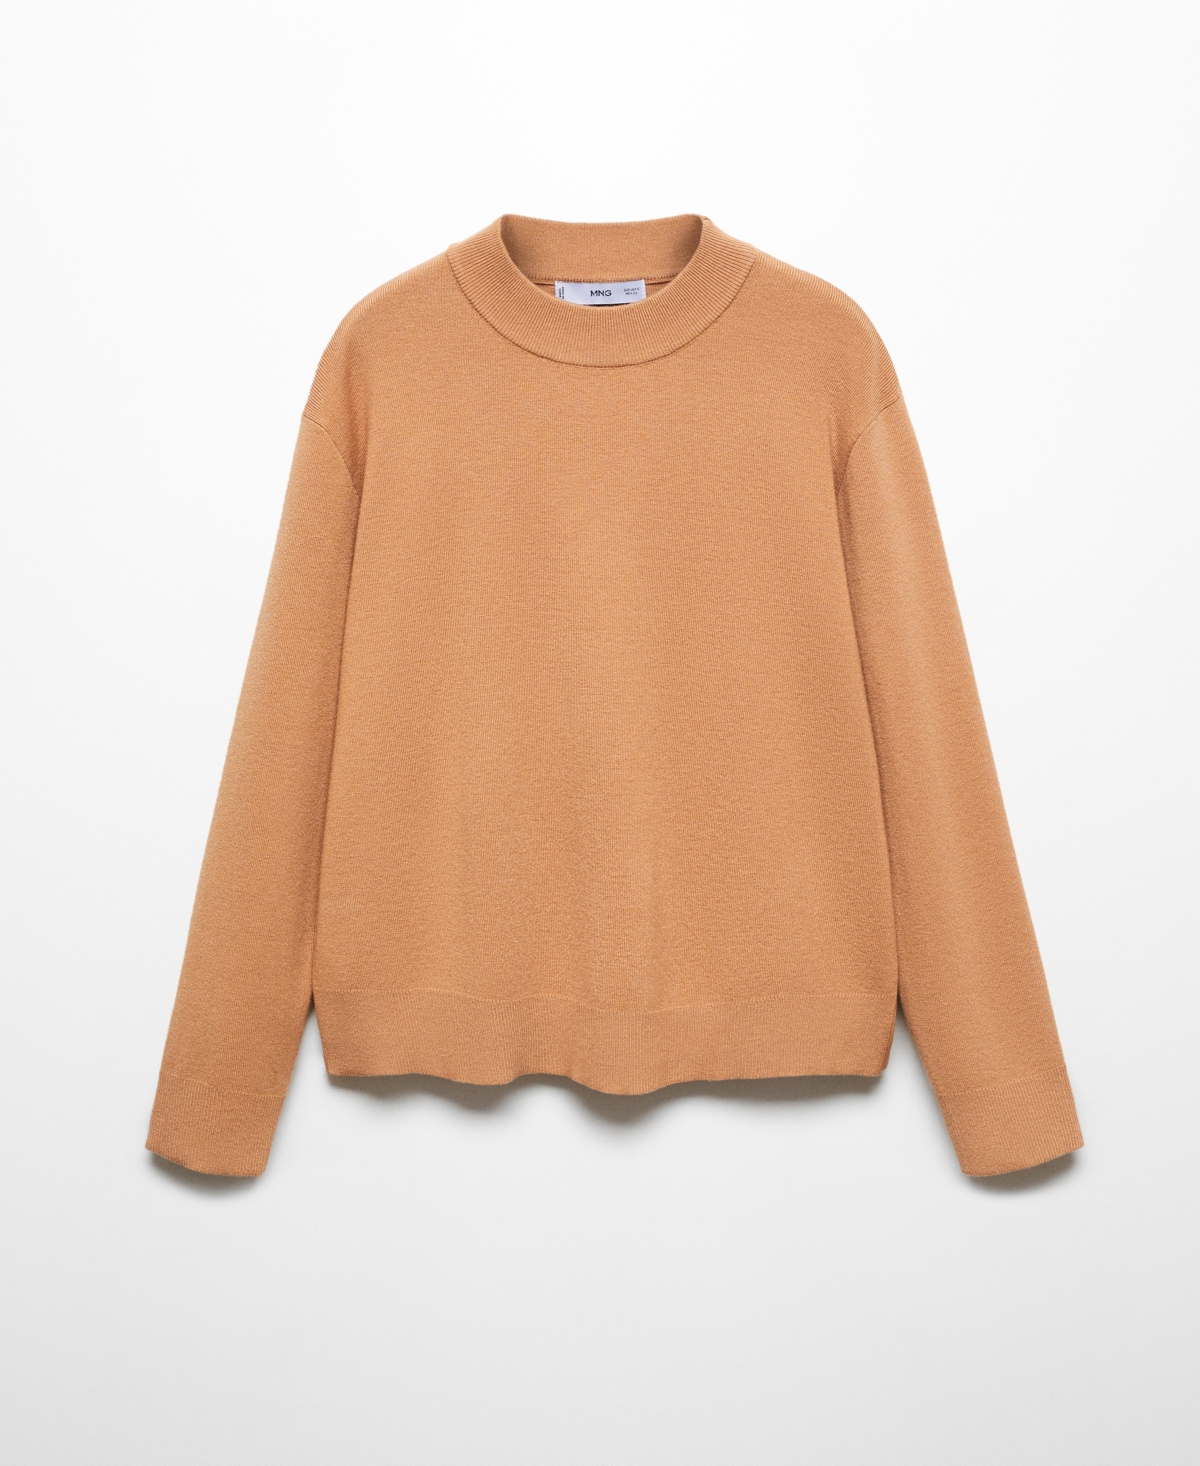 Mango Women's Round-neck Knitted Sweater In Medium Brown